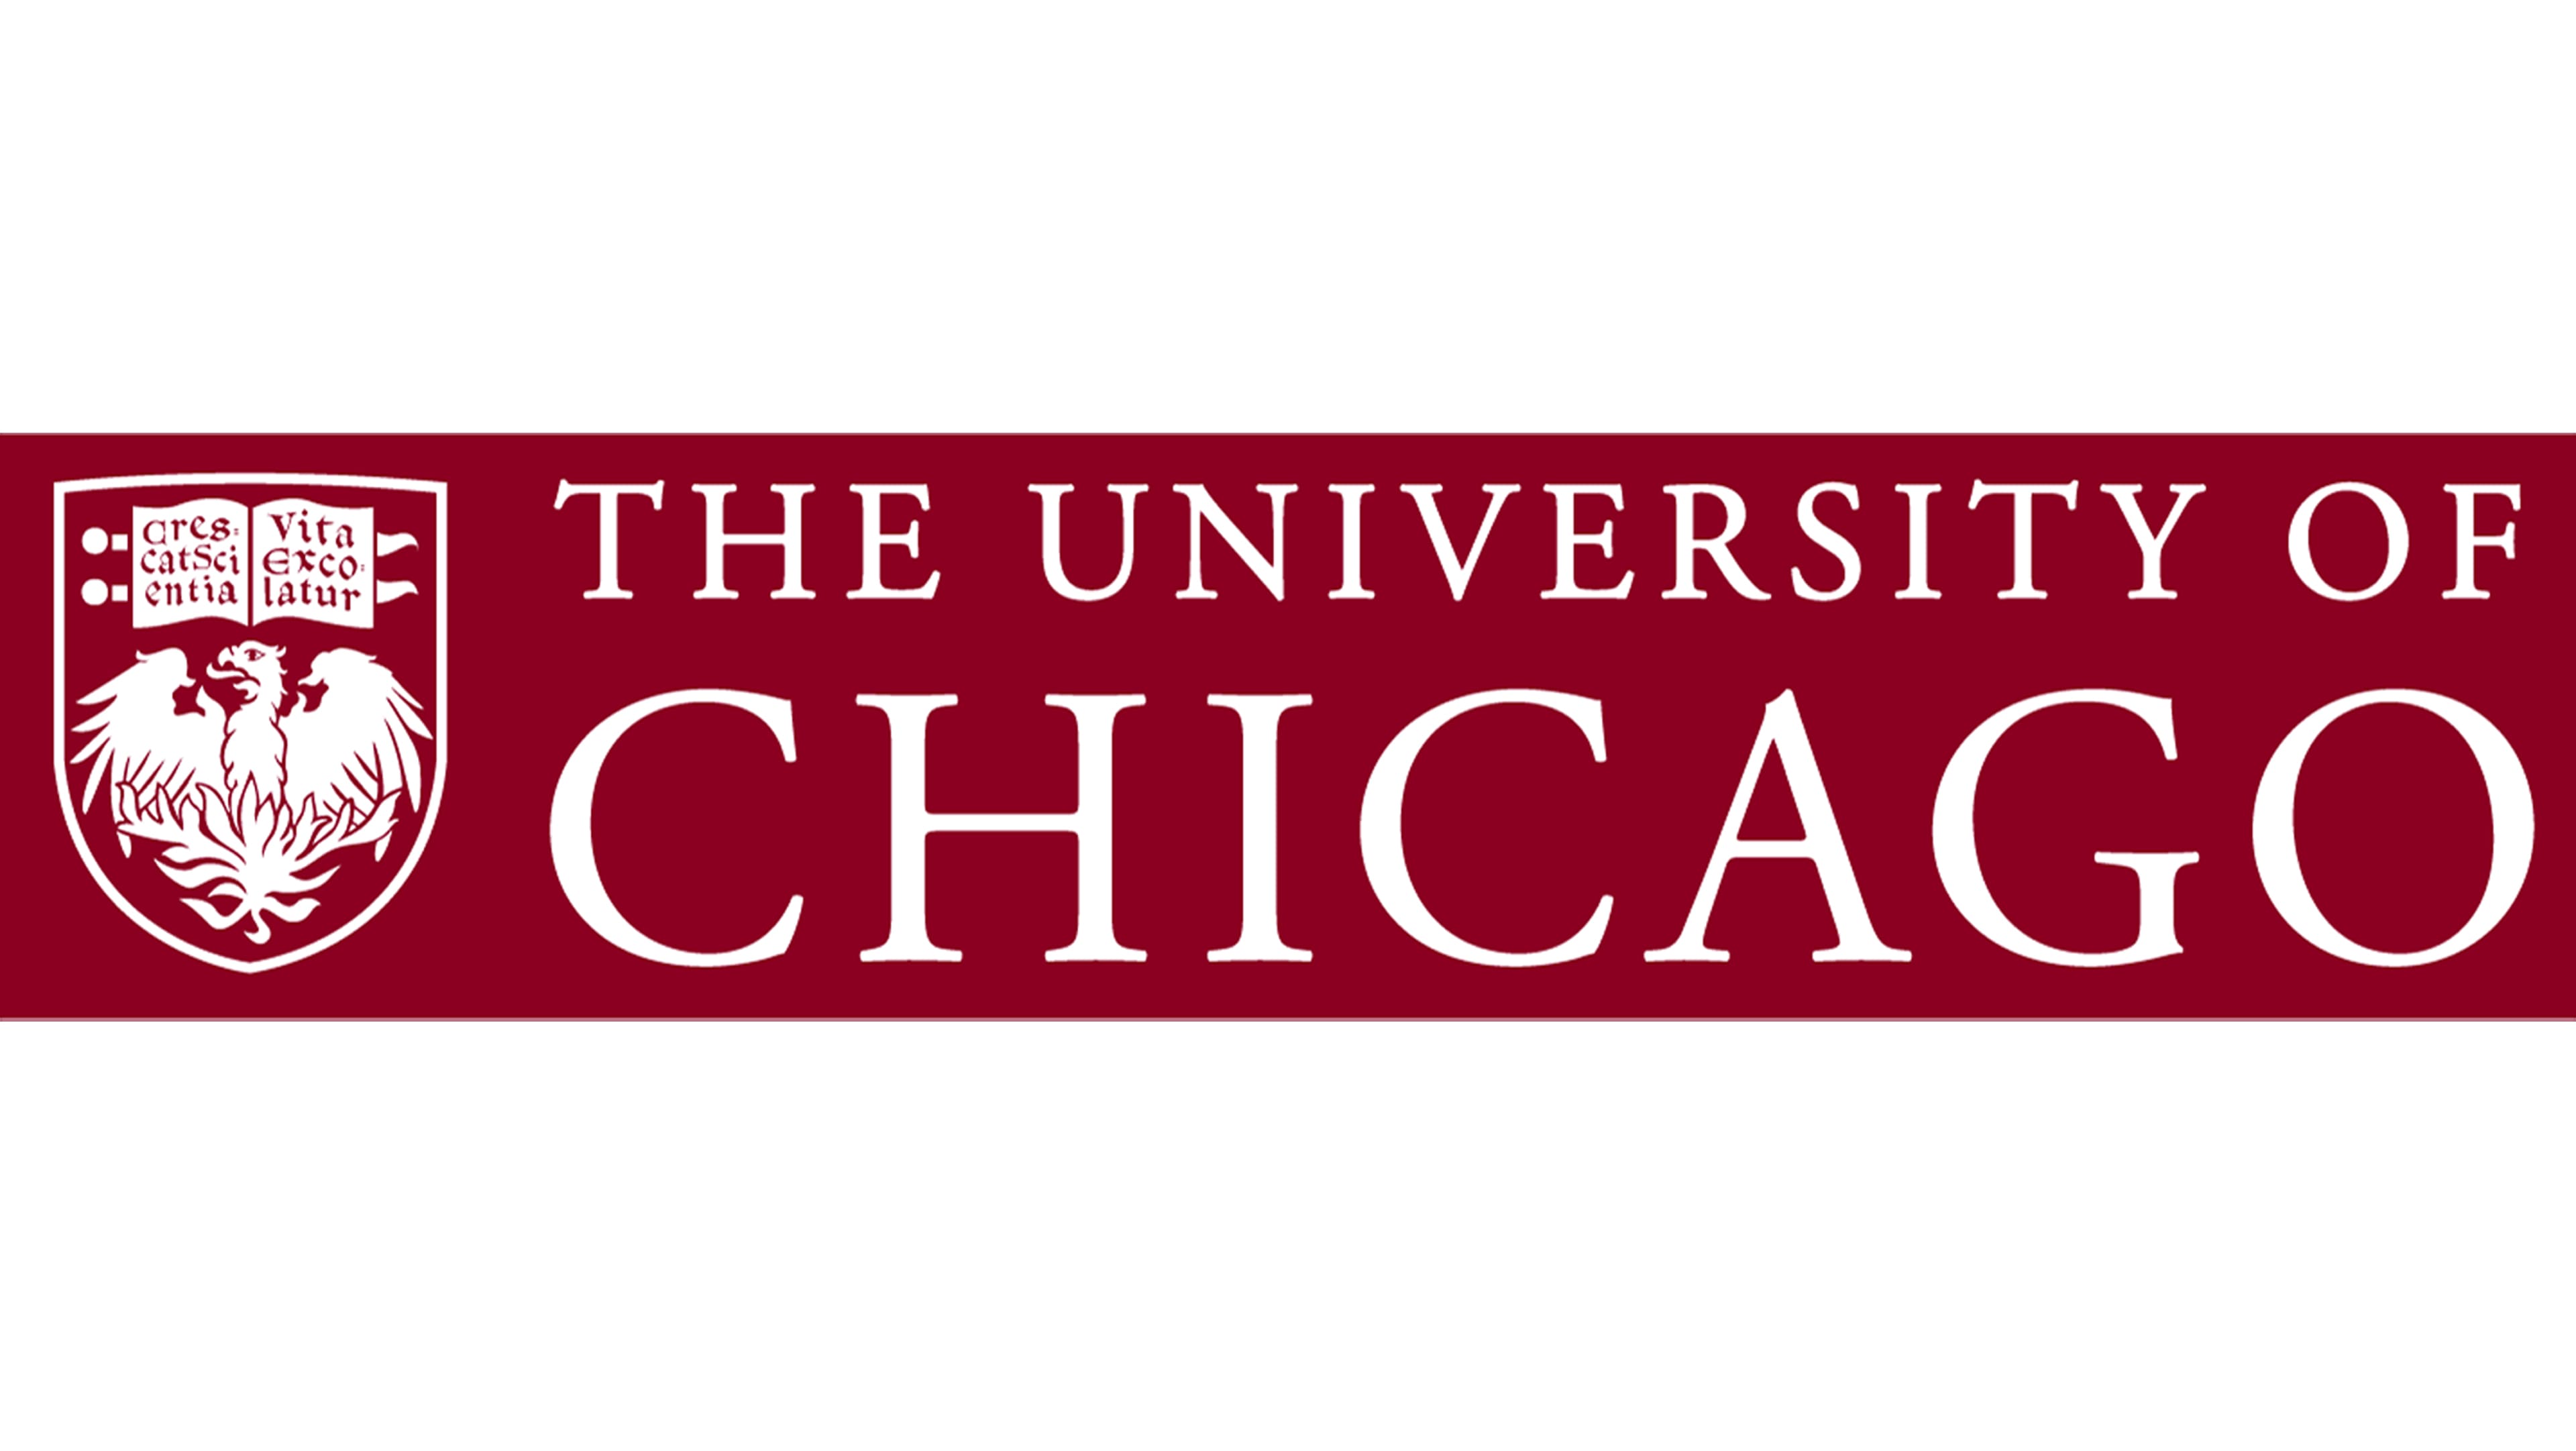 Université de Chicago Logo et symbole, signification, histoire, PNG, marque